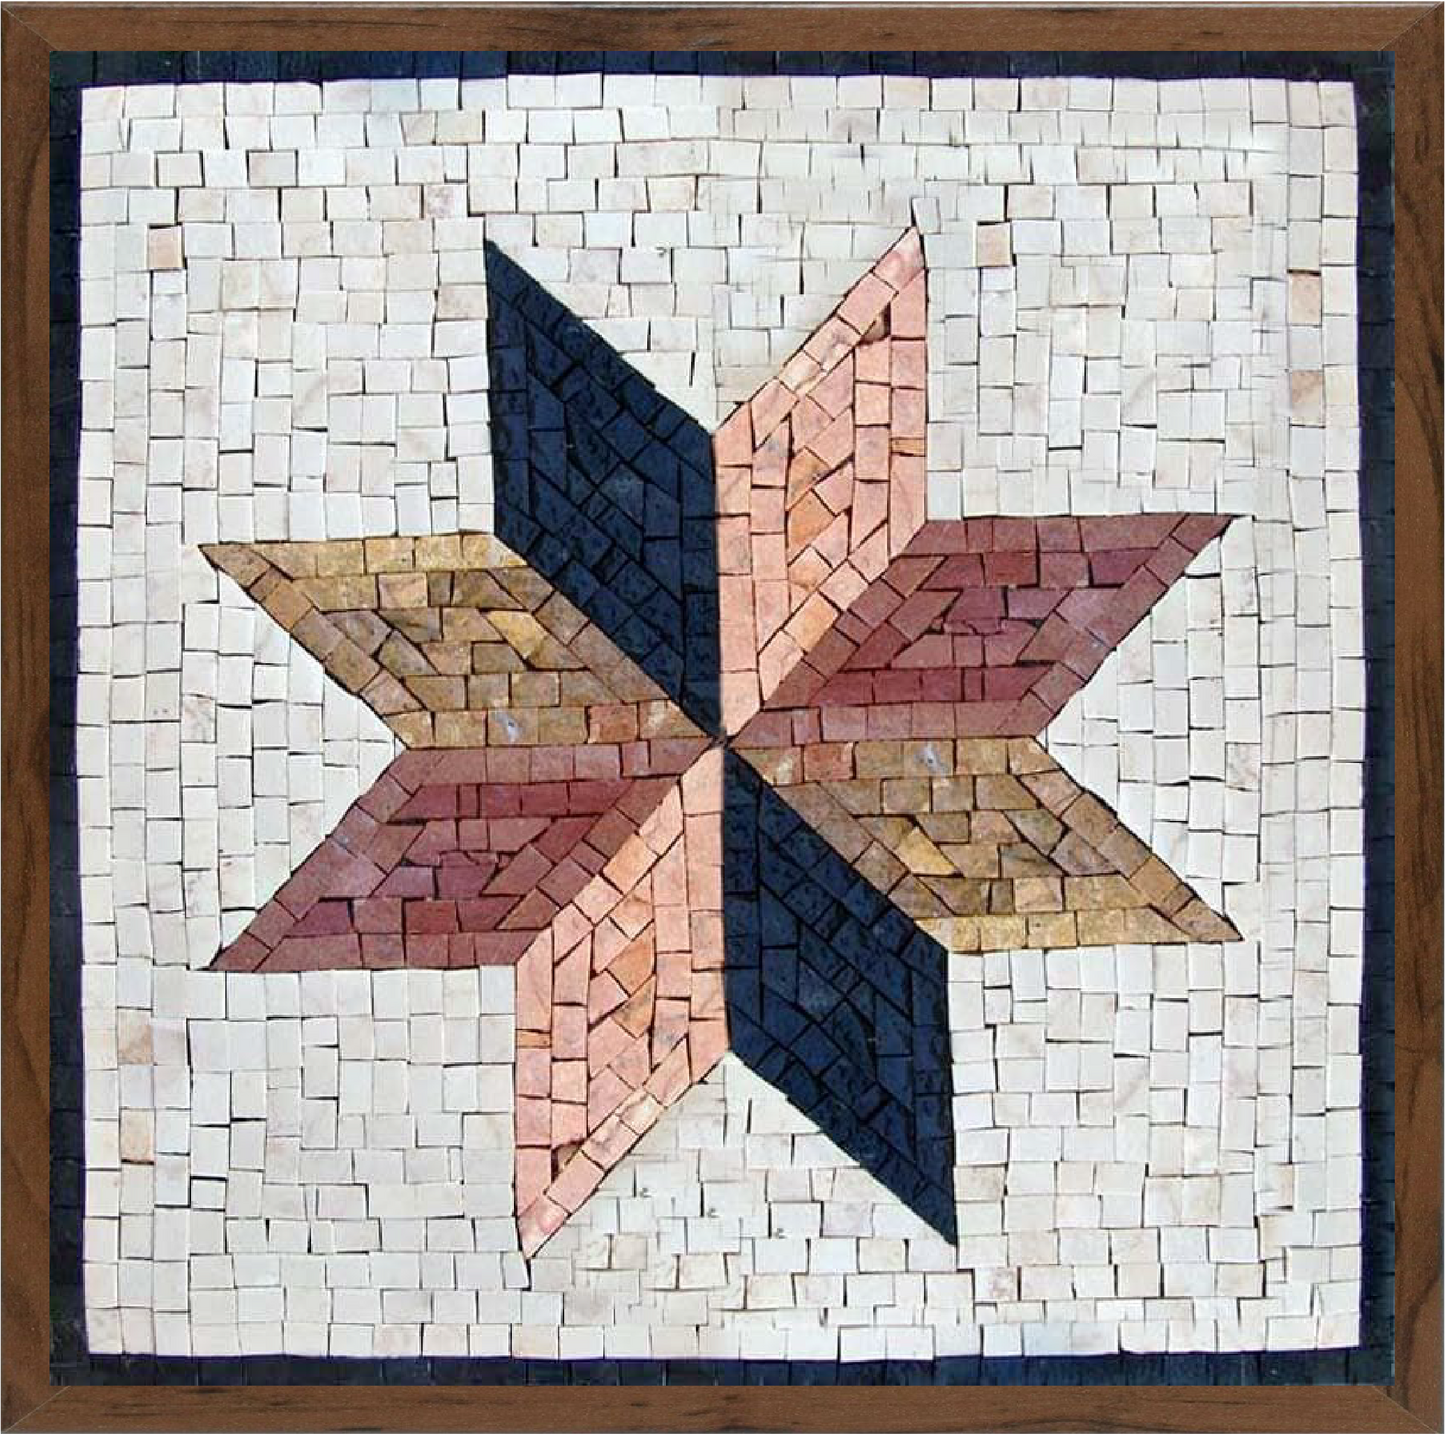 8 point star motif mosaic art